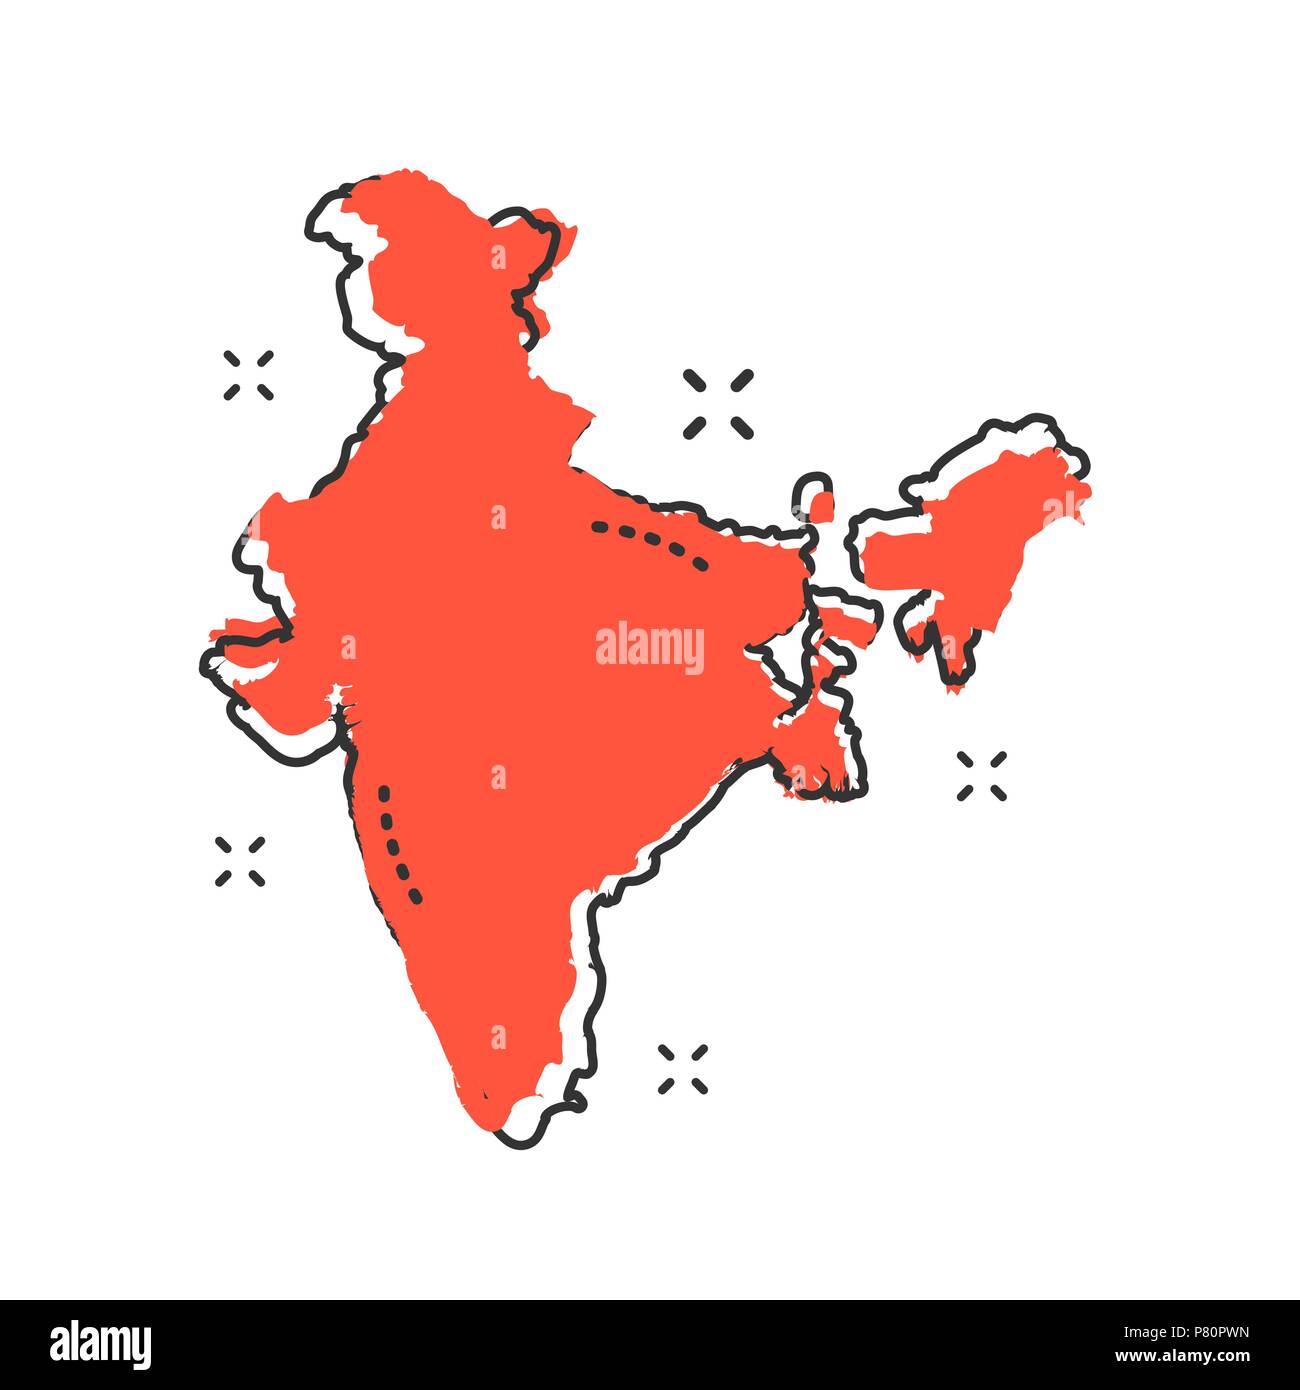 Cartoon Indien Karte Symbol im Comic-stil. Indien Abbildung Piktogramm. Land Geographie Zeichen splash Geschäftskonzept. Stock Vektor